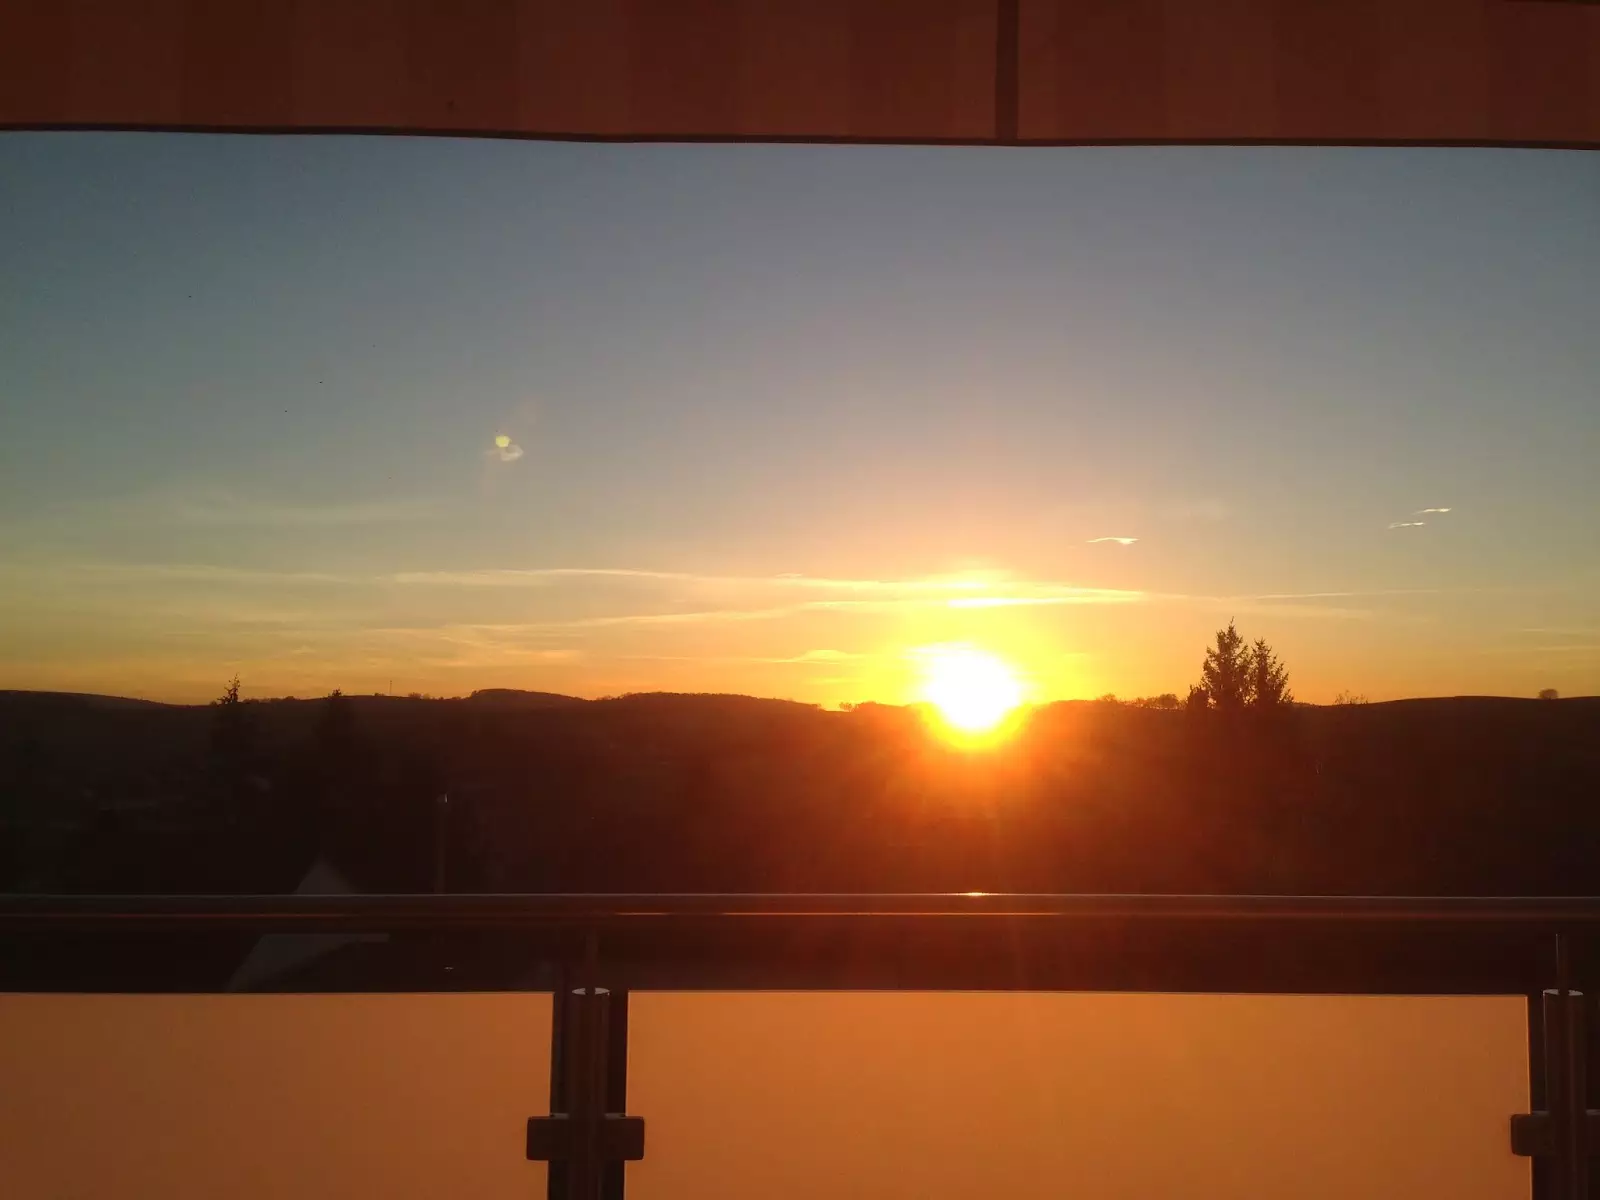 Sonnenuntergang in Hoffenheim von unserem Balkon aus gesehen...